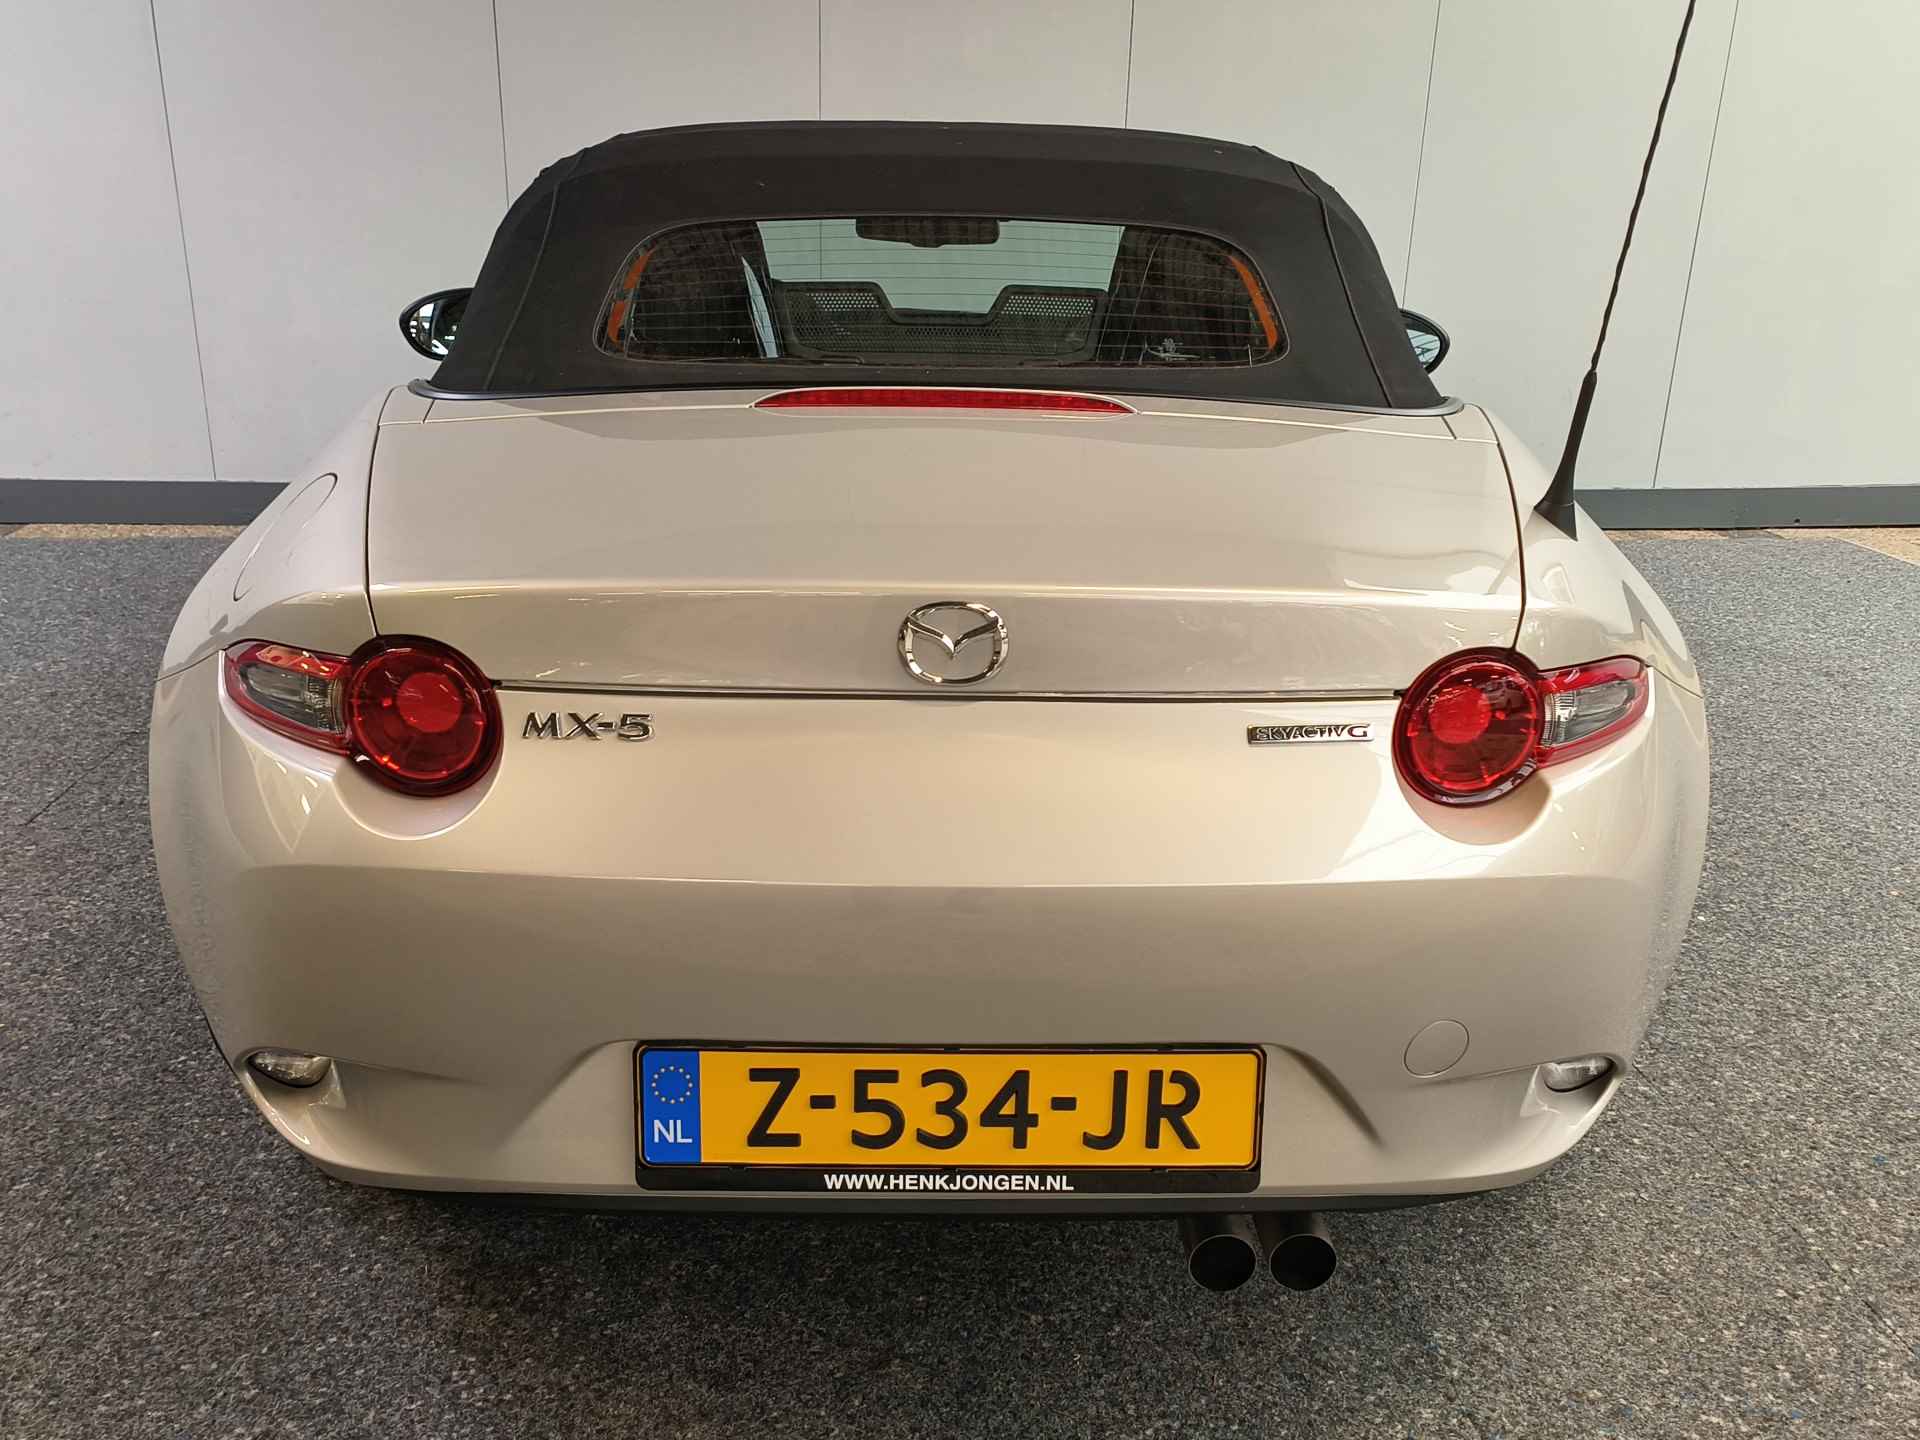 Mazda MX-5 1.5 SkyActiv-G 132 Rijklaar + Fabrieks garantie tot 11-2025 Henk Jongen Auto's in Helmond,  al 50 jaar service zoals 't hoort! - 28/32